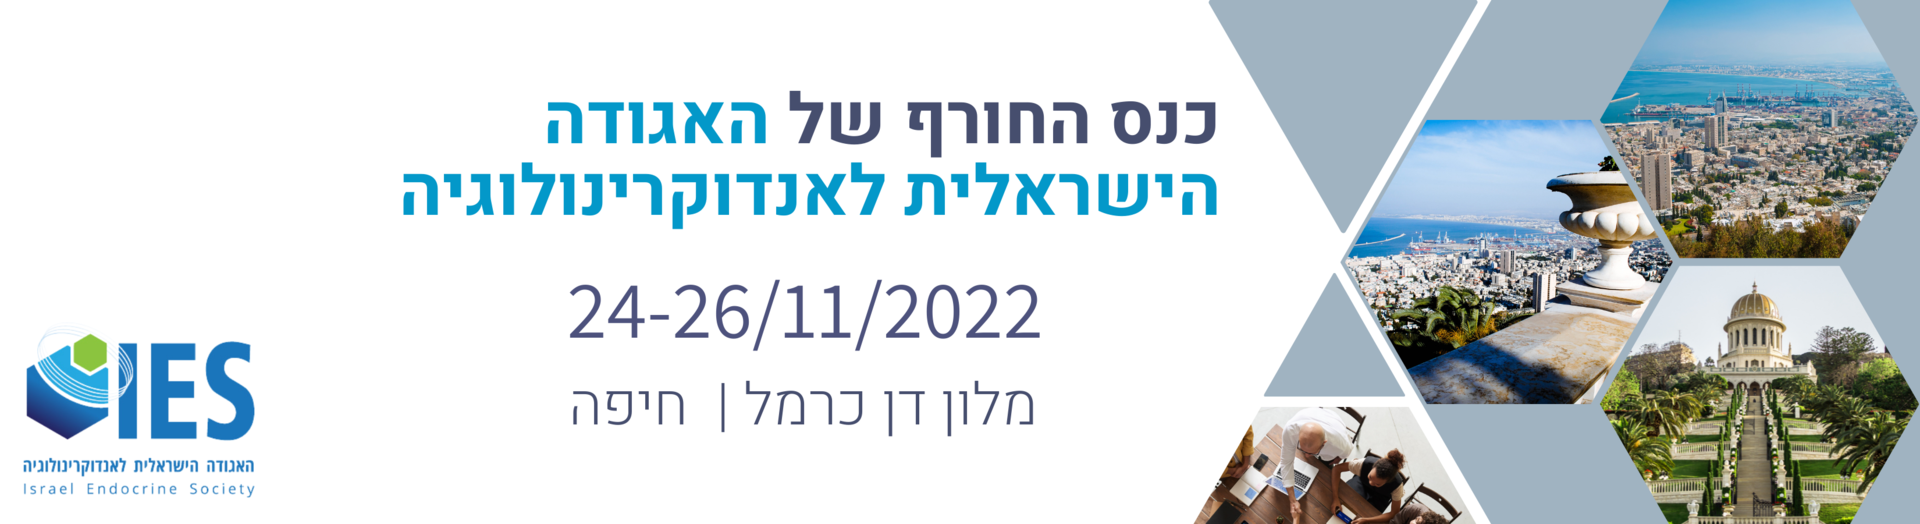 פתיחת רישום כנס חורף | האגודה הישראלית לאנדוקרינולוגיה - 24-26/11/2022